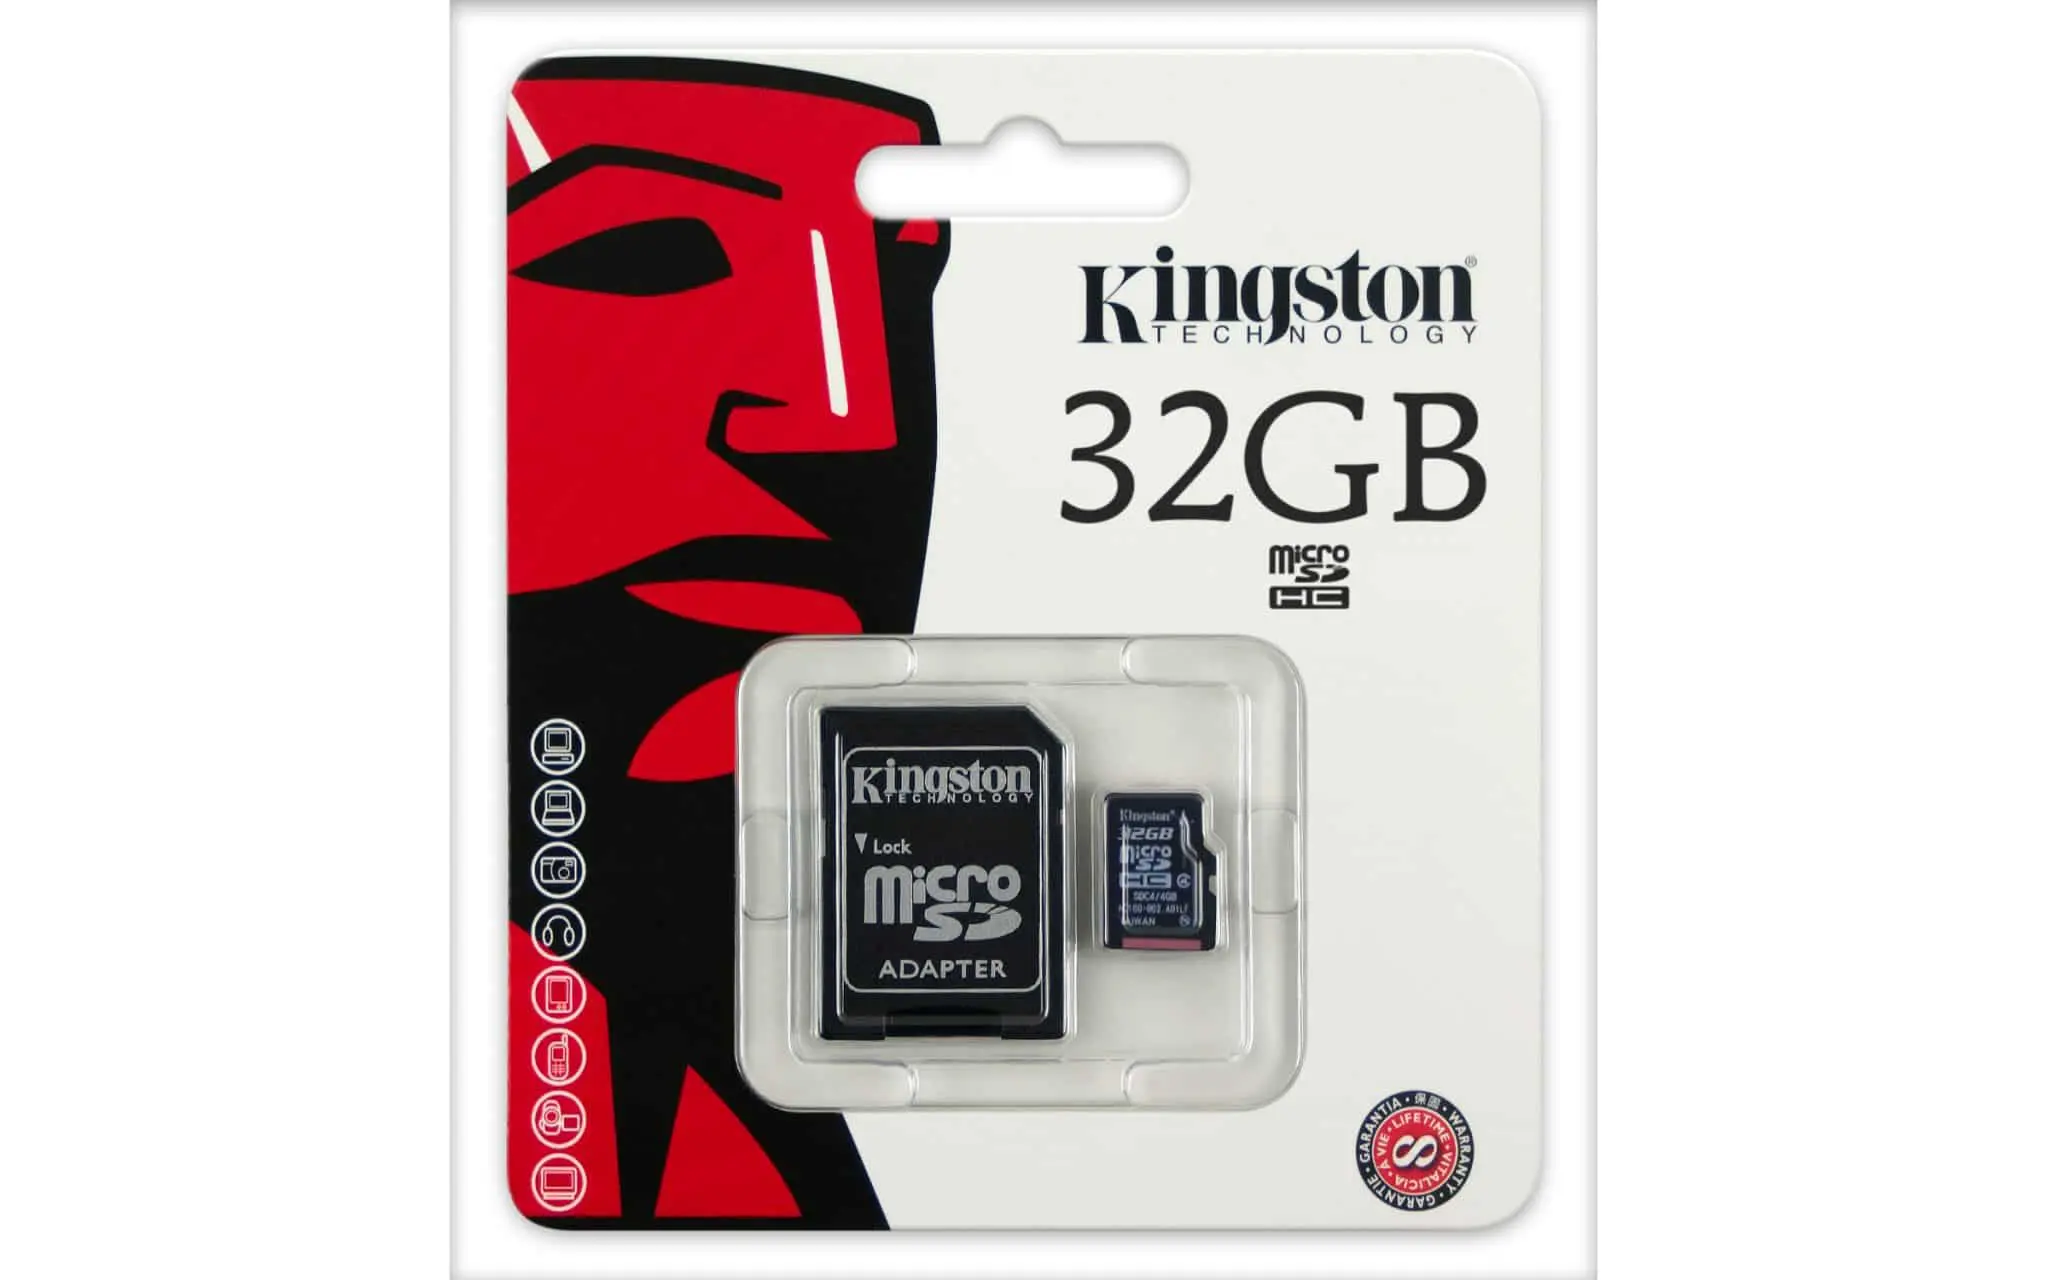 Сд карта на 32 гб. Карта памяти Kingston 32gb Micro. Карта памяти MICROSD 32gb Kingston MICROSDHC class 10. Карта памяти 32 ГБ MICROSDHC Kingston. Kingston 32 GB флешка MICROSD.